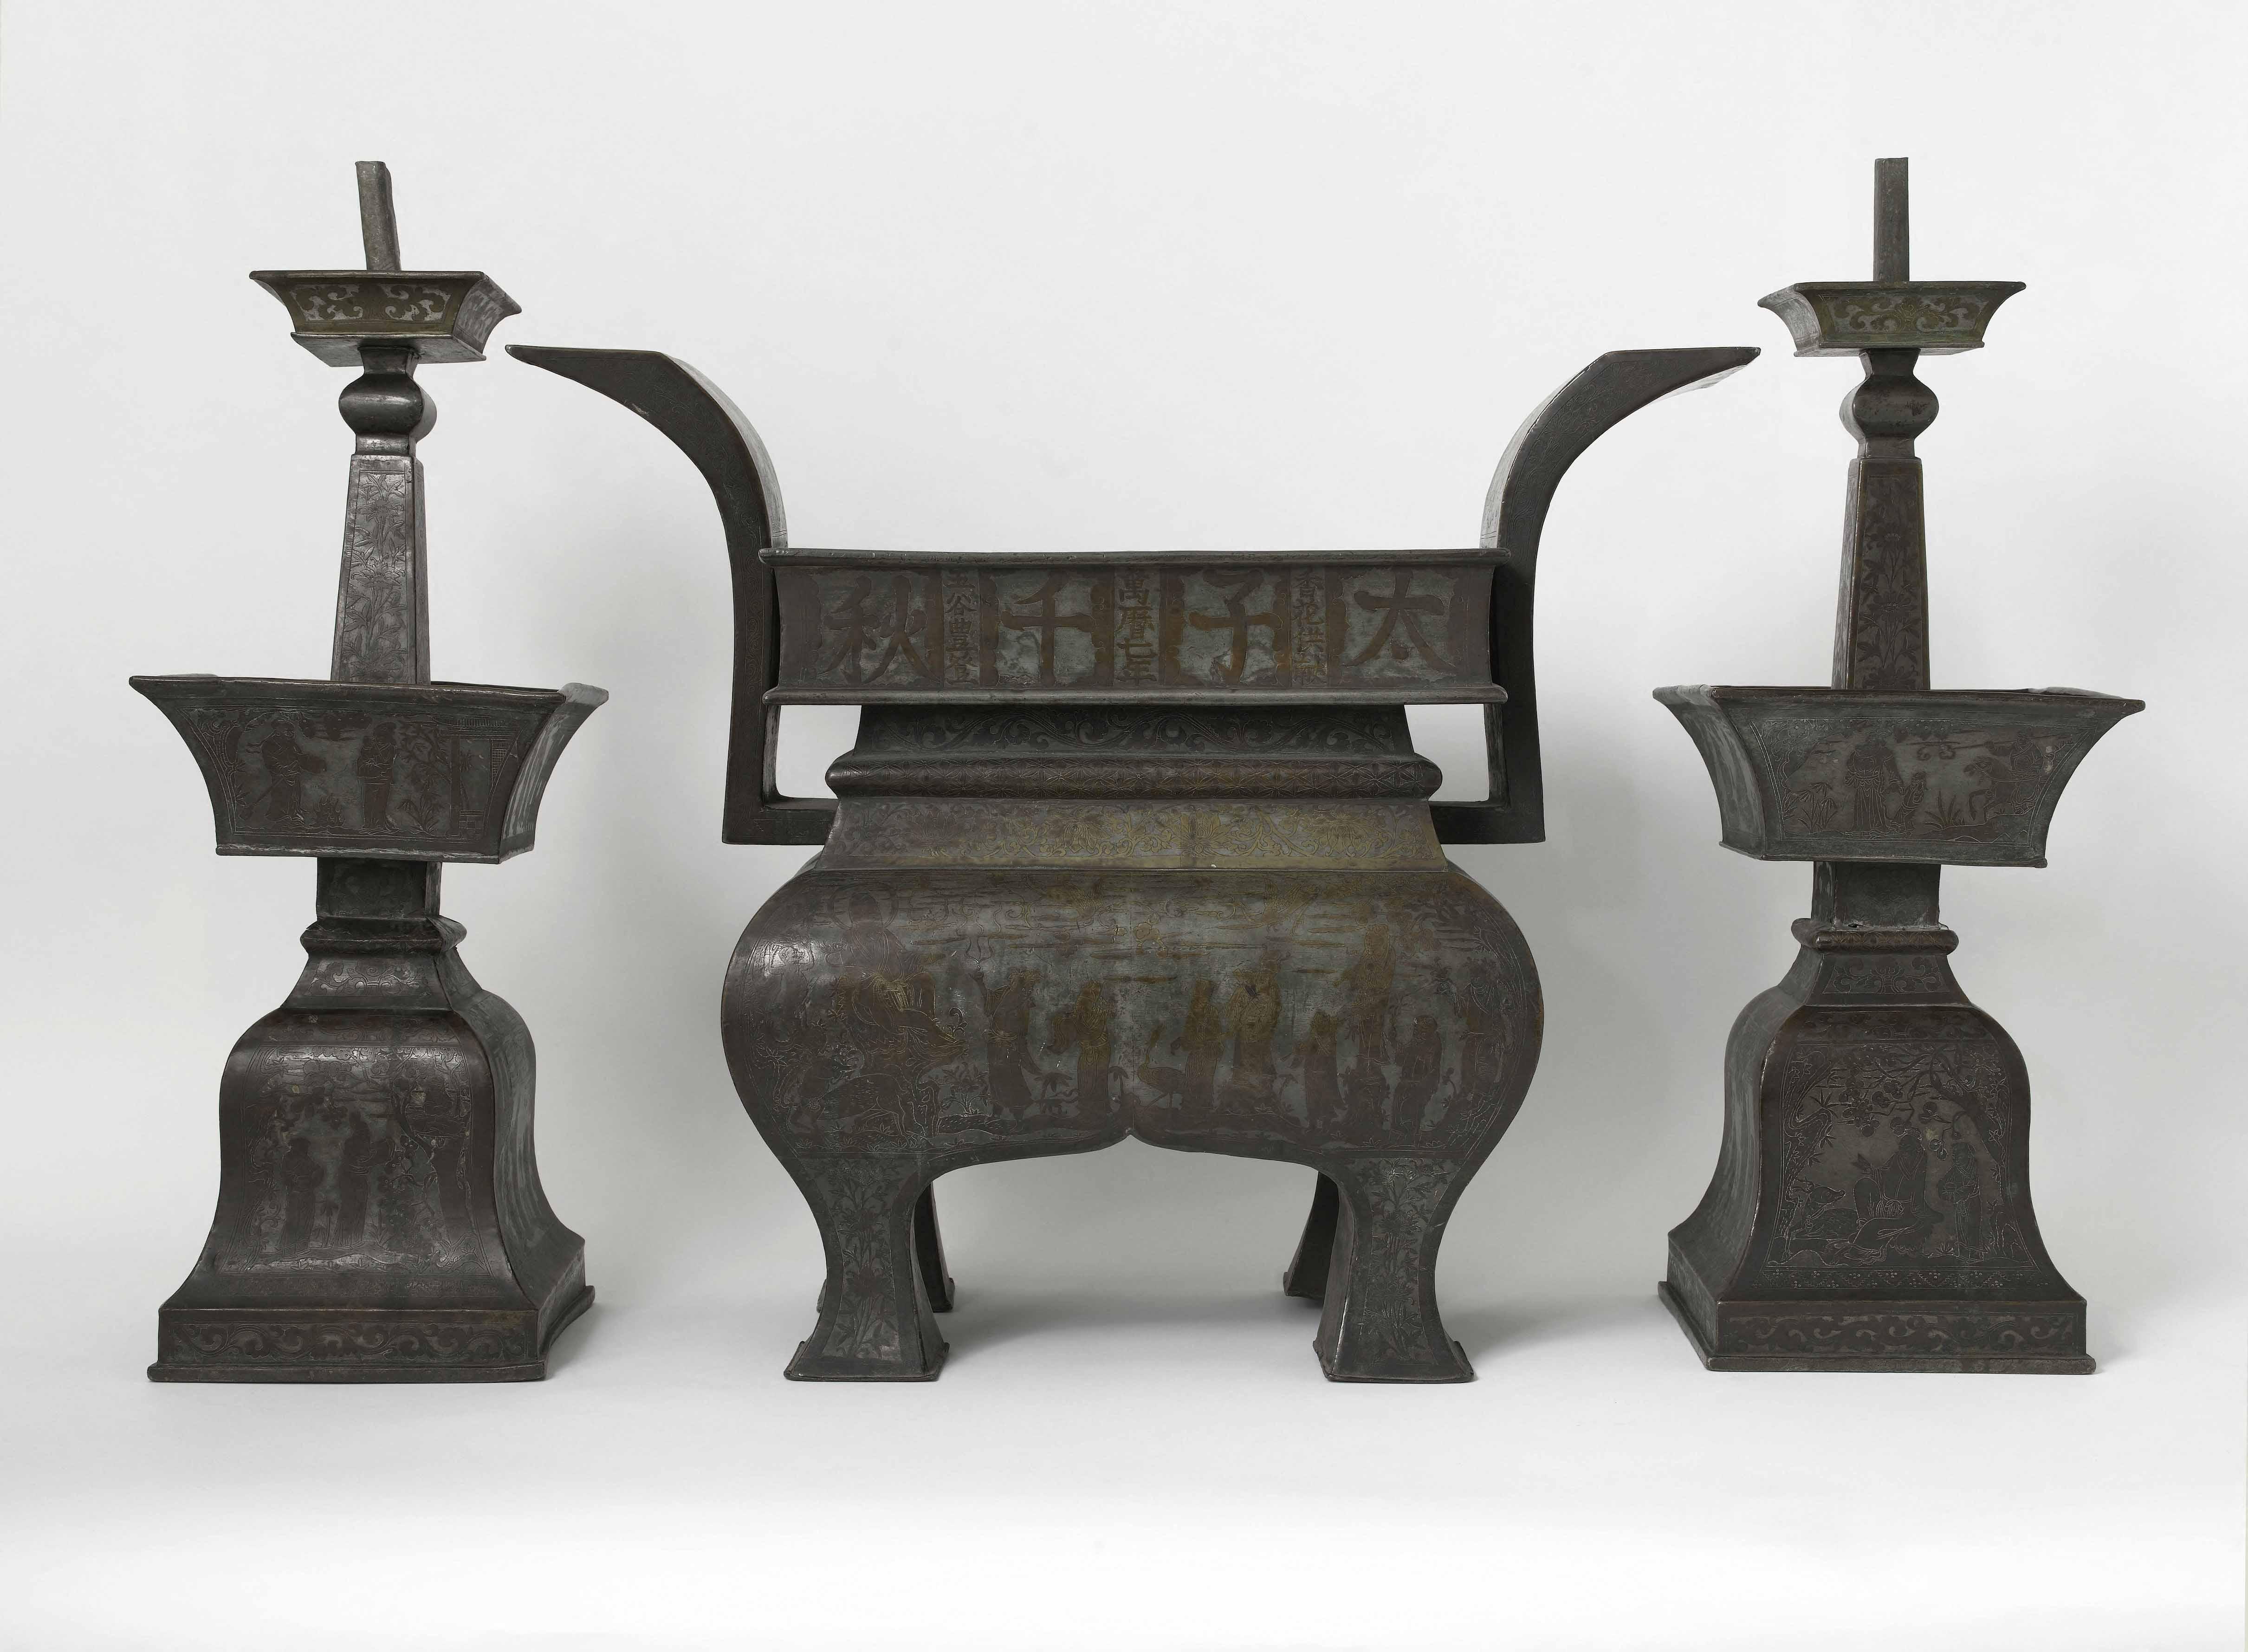 Garniture d'autel composée d'un brûle-parfum et de deux chandeliers